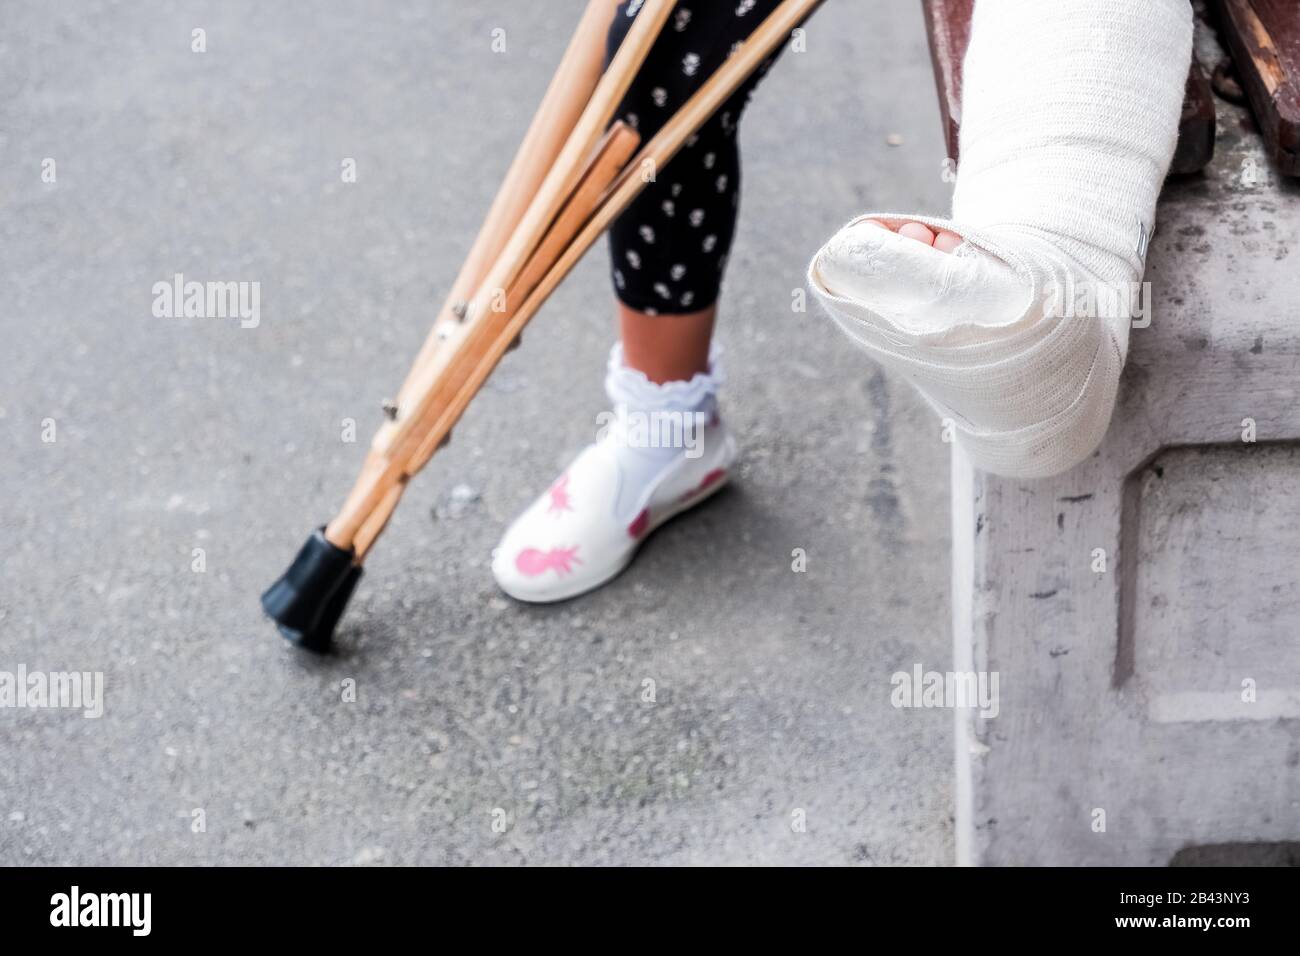 Enfant utilisant des béquilles et des jambes cassées pour marcher, un accident pendant les sauts. Jambe cassée, béquilles en bois, enfant avec jambe cassée en plâtre blanc moulé Banque D'Images